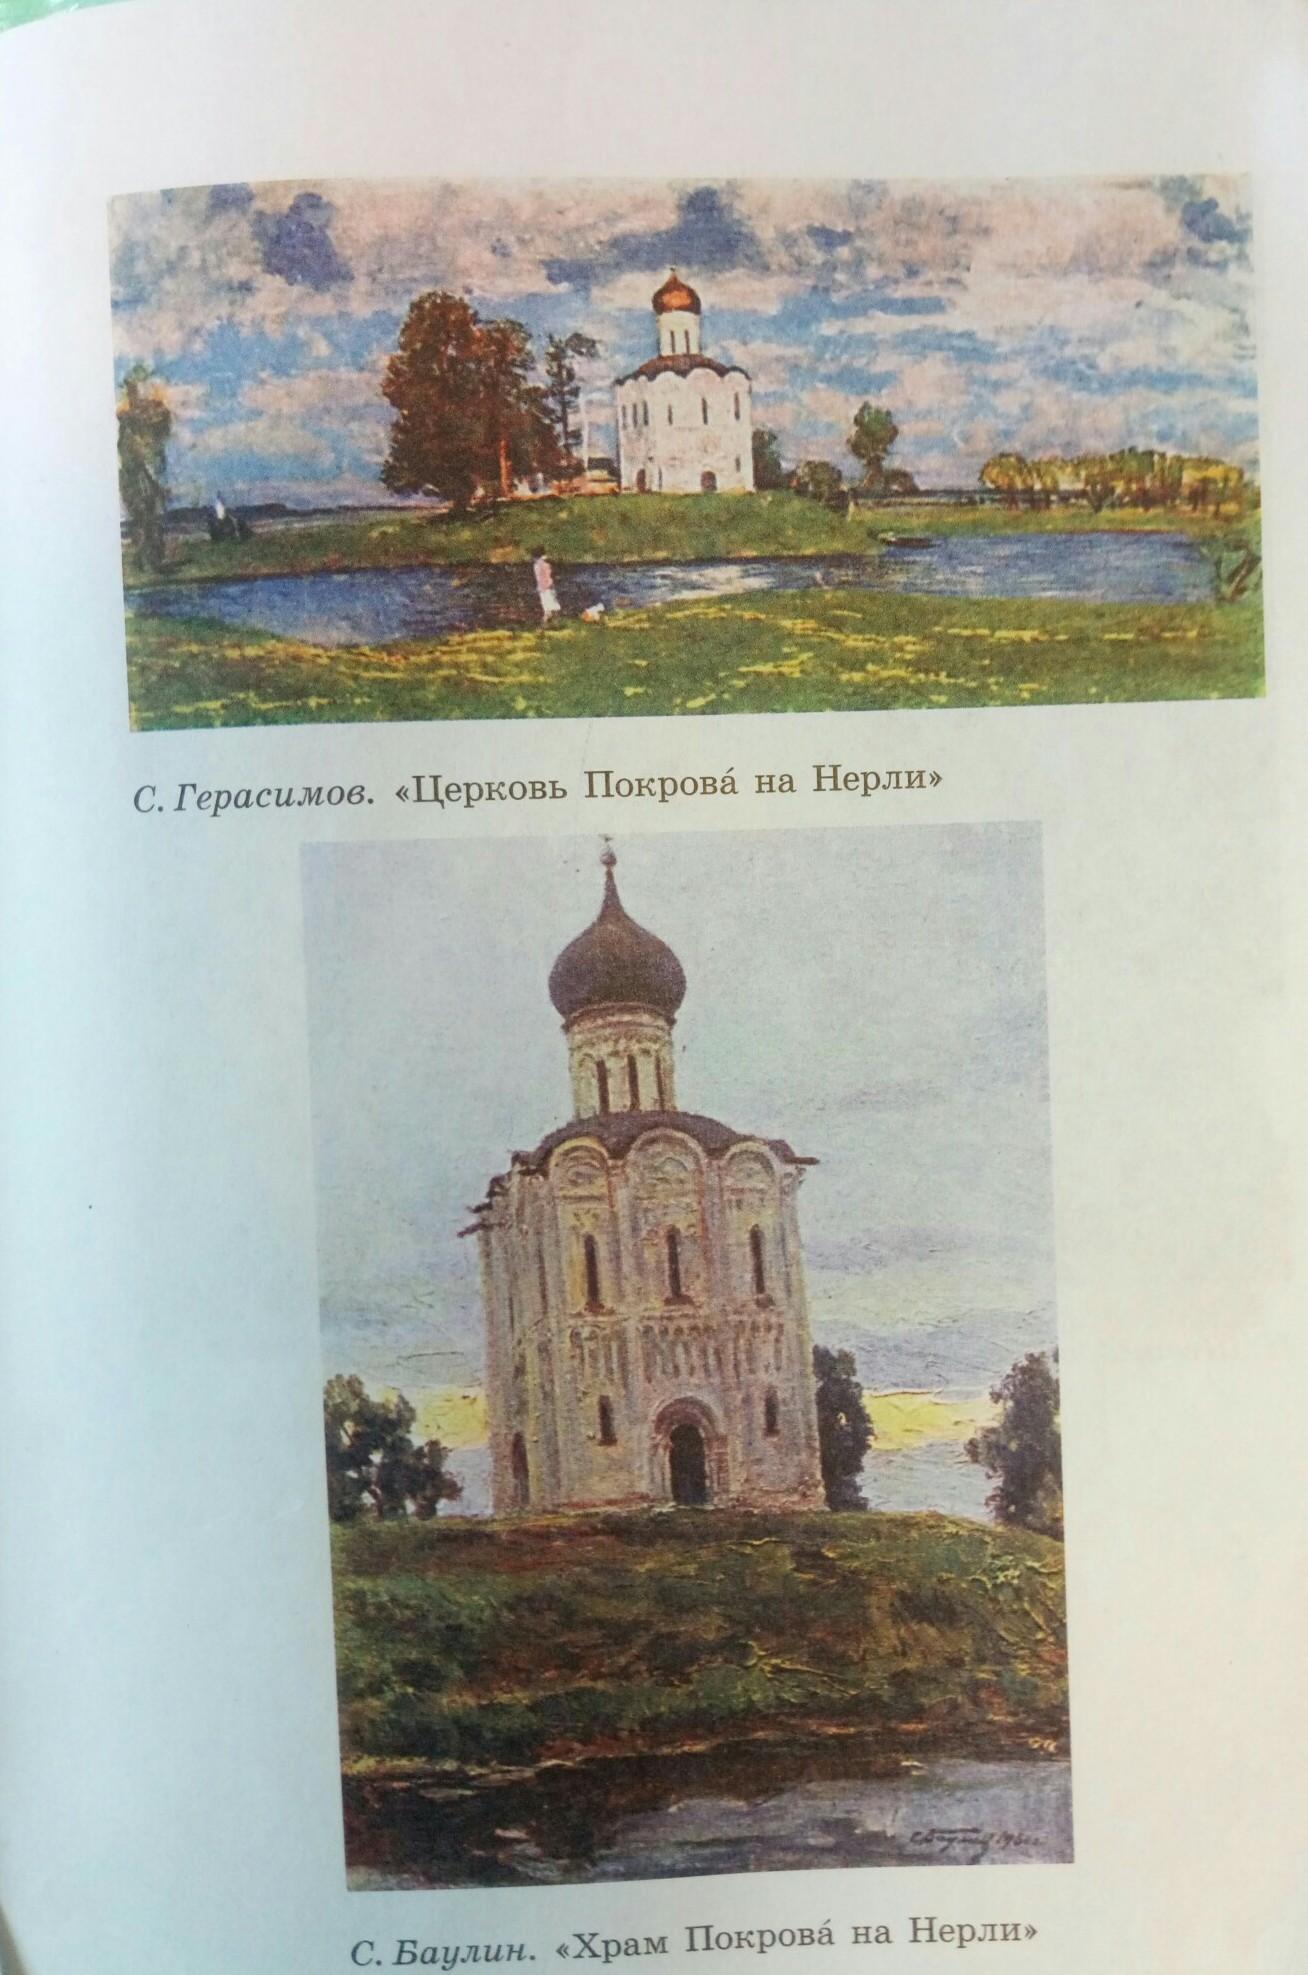 Картина Церковь Покрова на Нерли написана с в Герасимовым